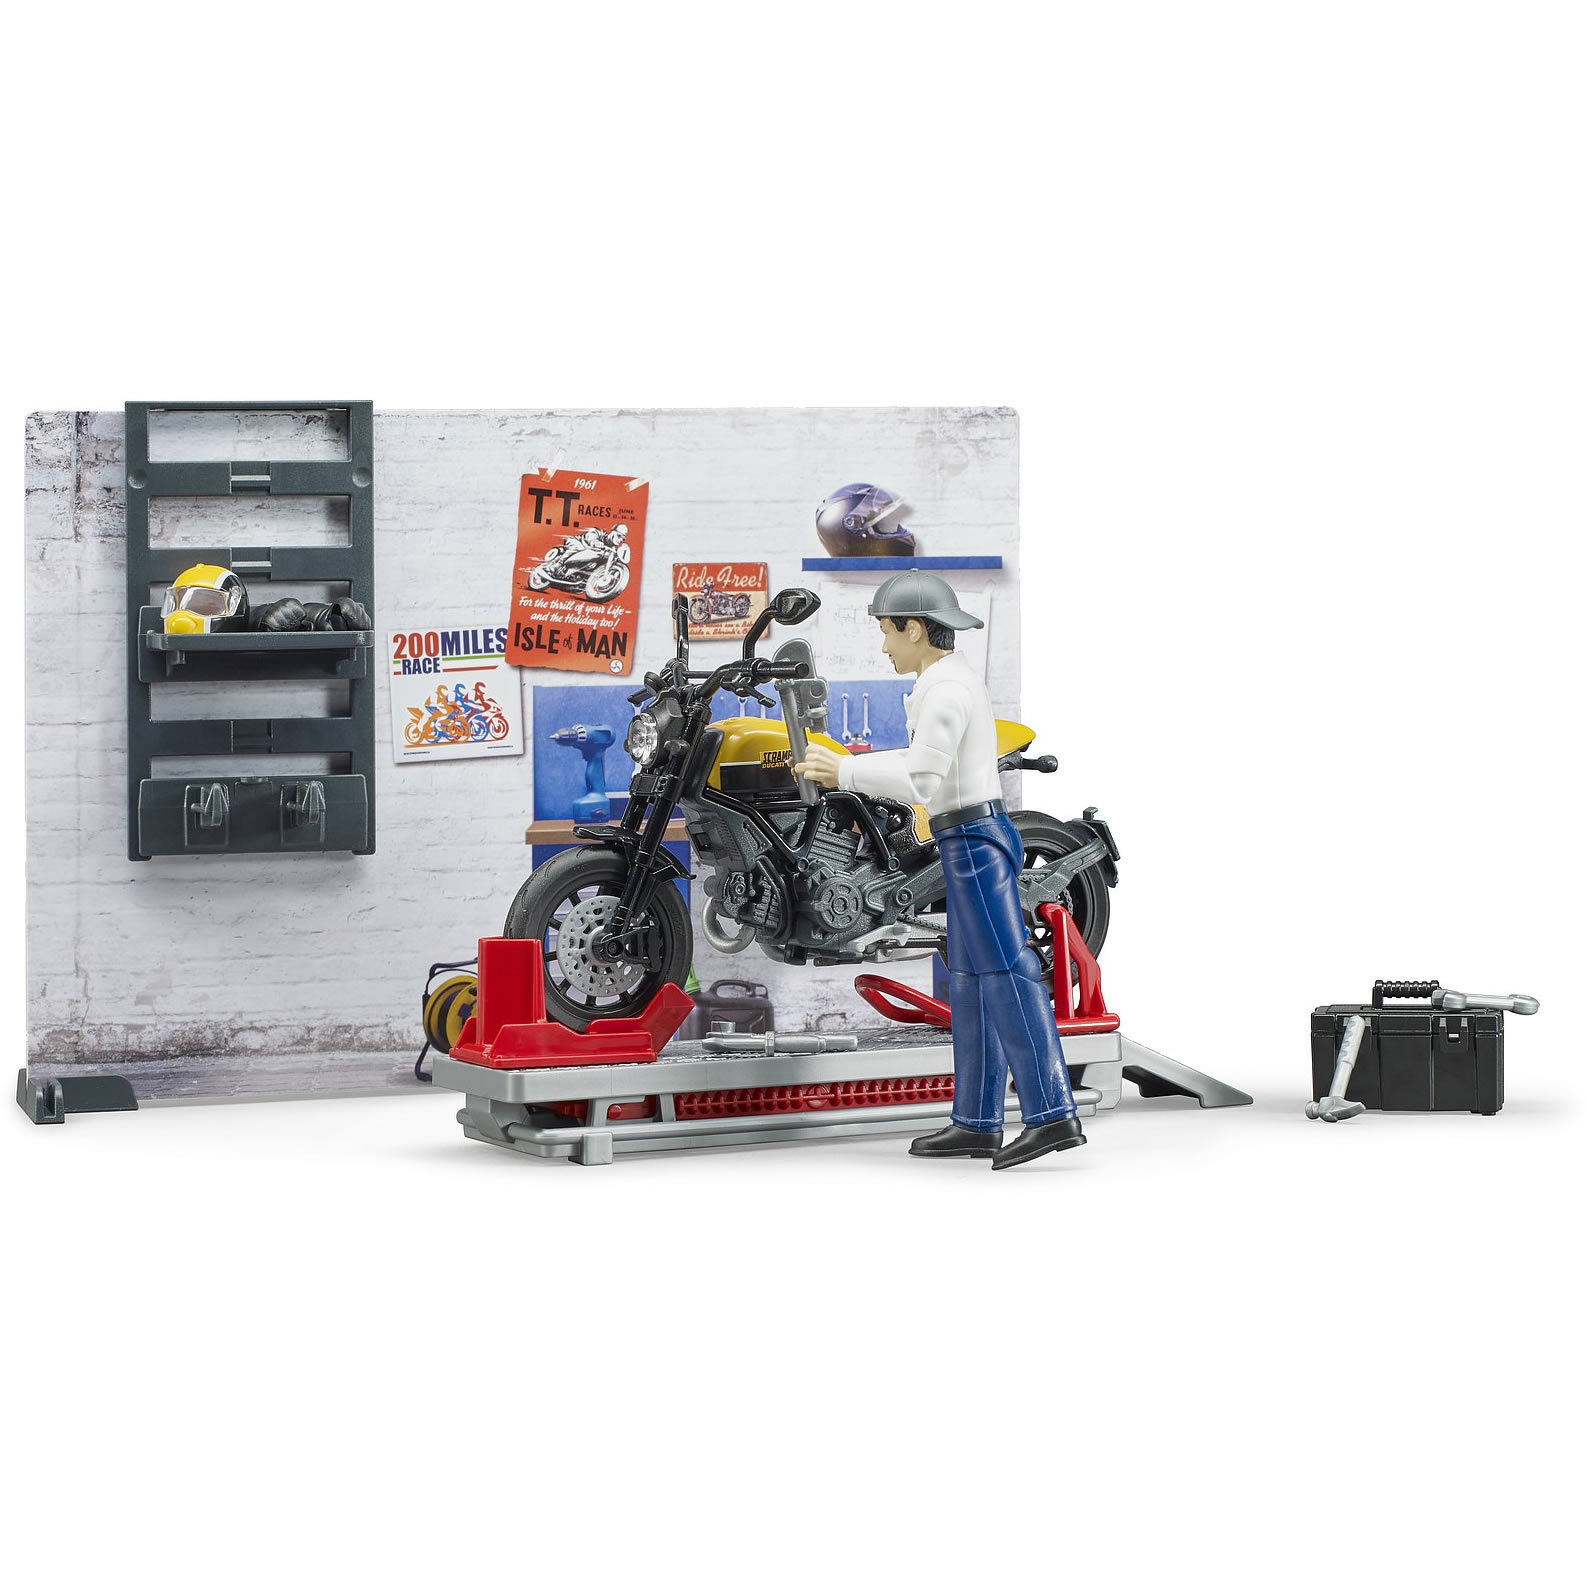 BRUDER bworld Spielzeug Motorrad Scrambler Ducati Full Throttle mit Fahrer 63053 